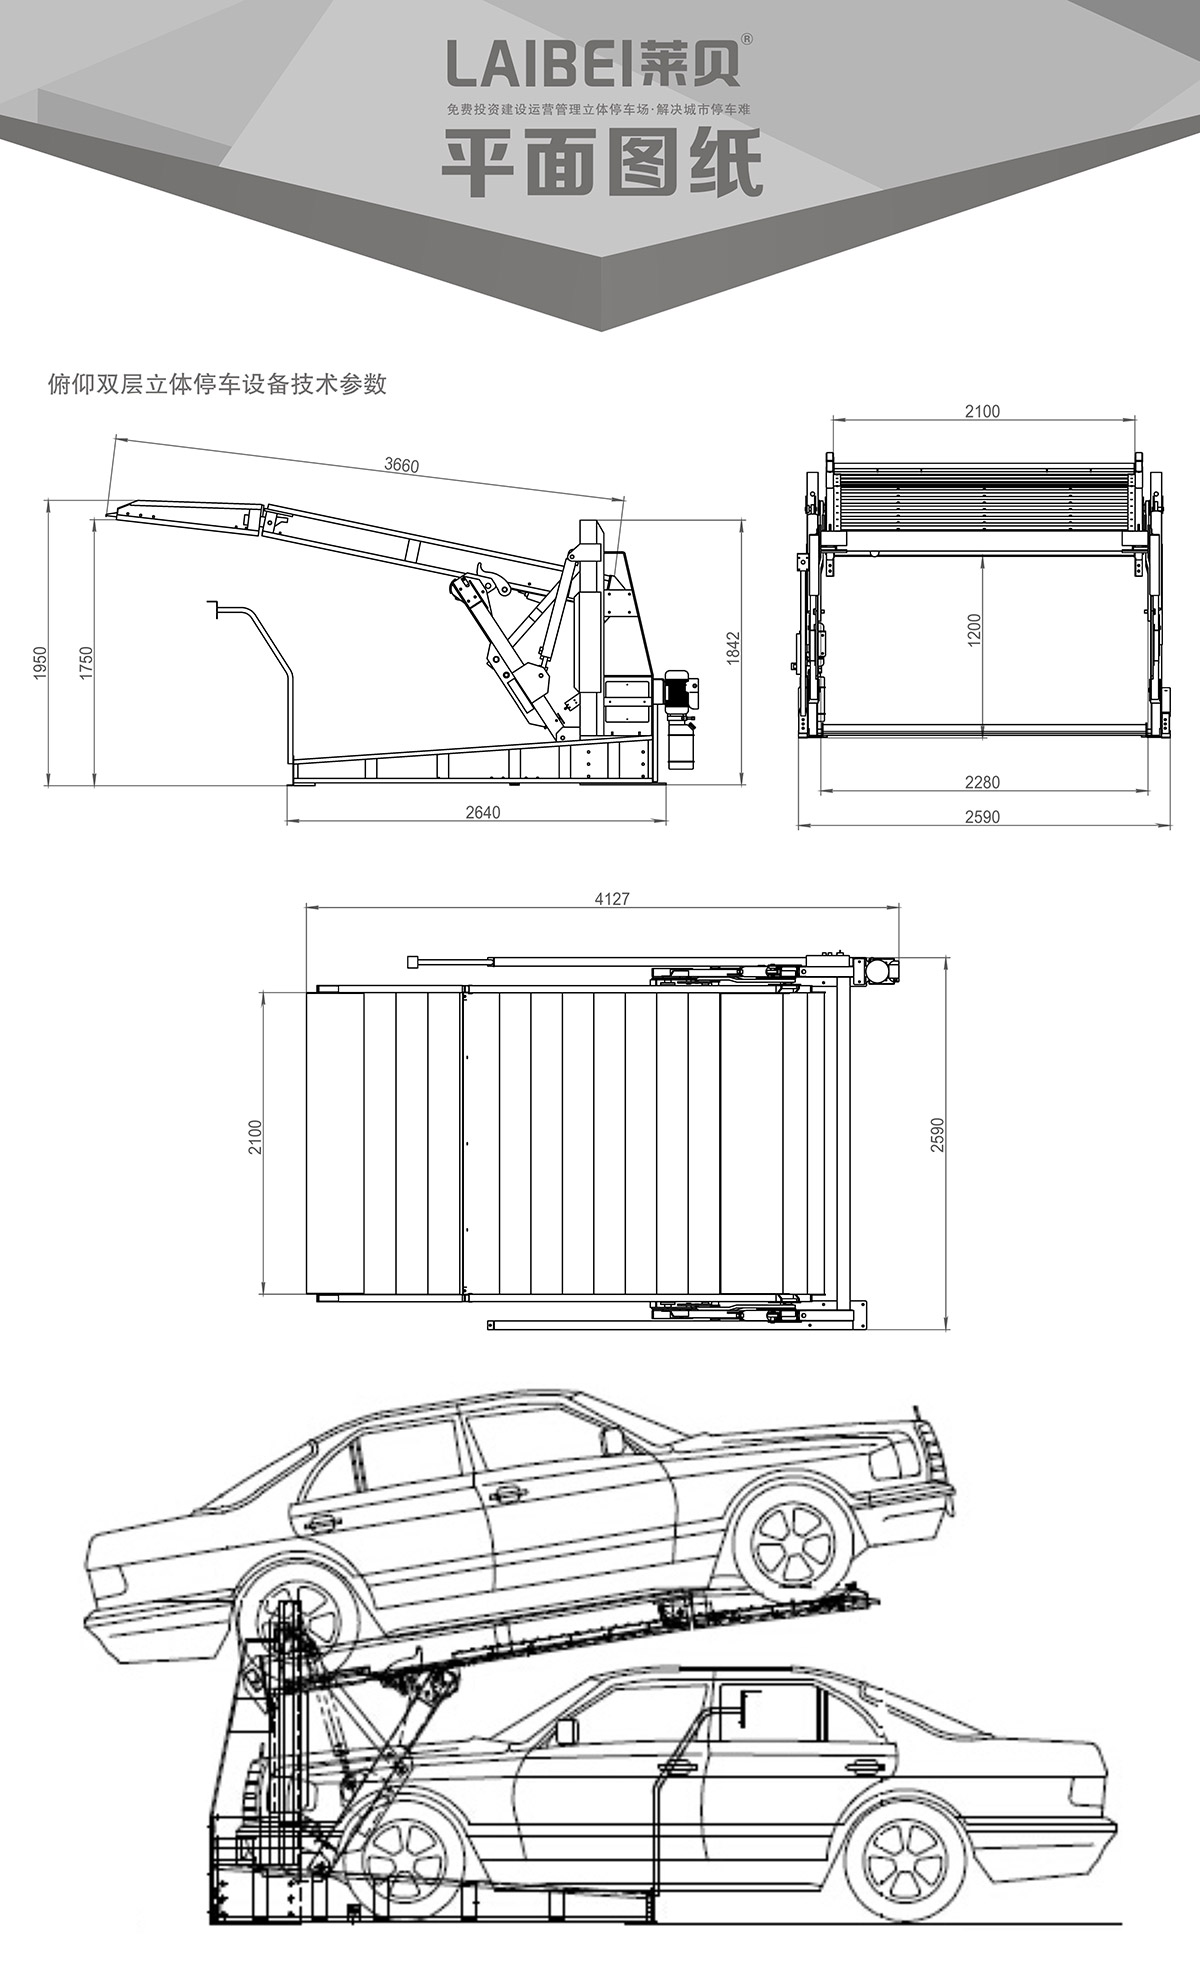 机械停车设备PJS俯仰简易升降立体停车平面图纸.jpg